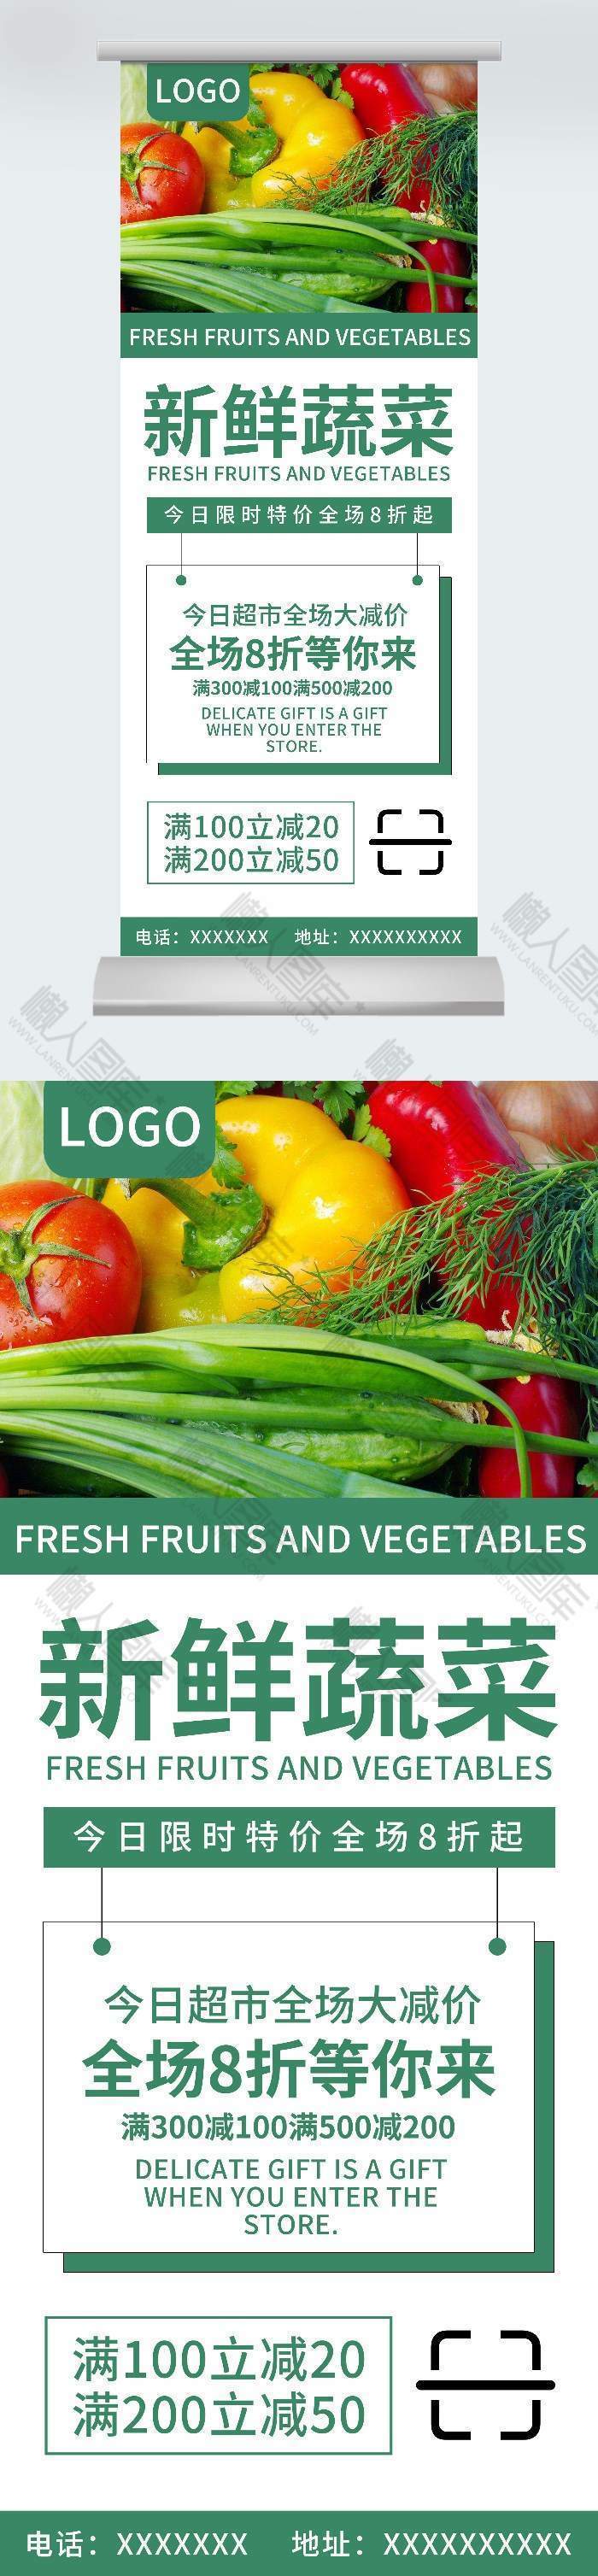 绿色简约超市蔬菜促销海报